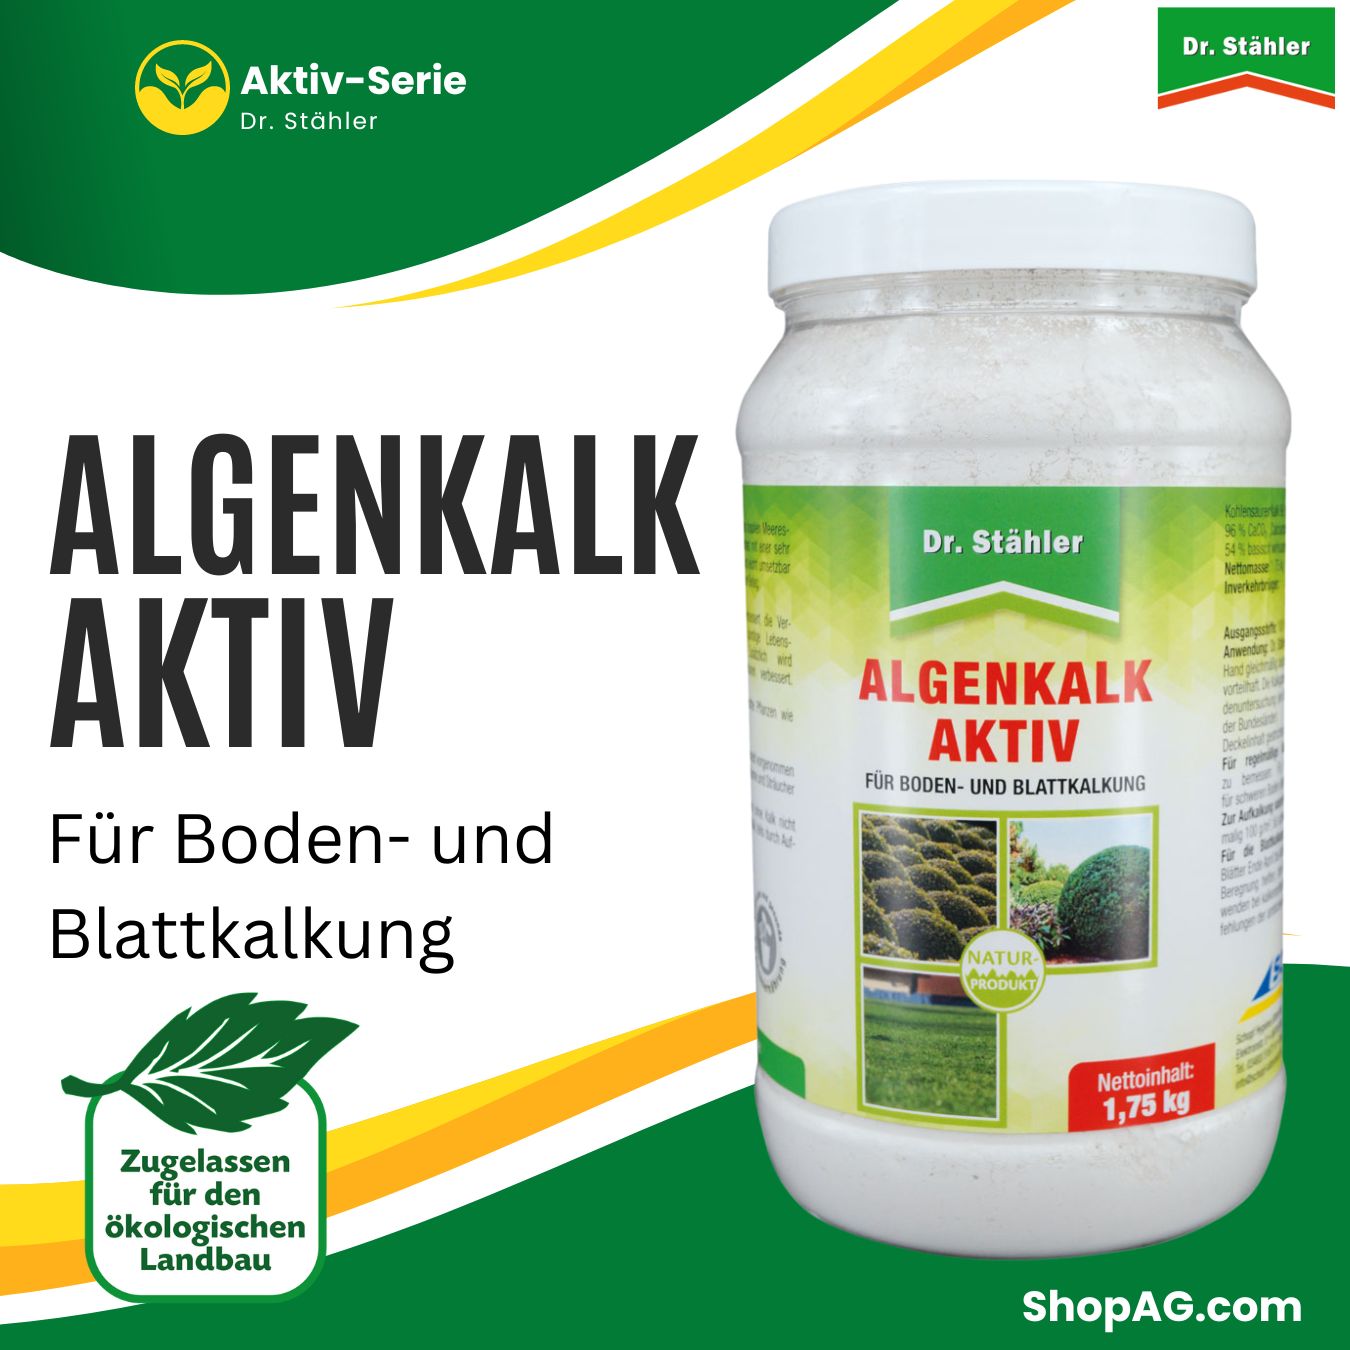 Algenkalk Aktiv mikrofeines Pulver für Boden und Blattkalkung Dr. Stähler